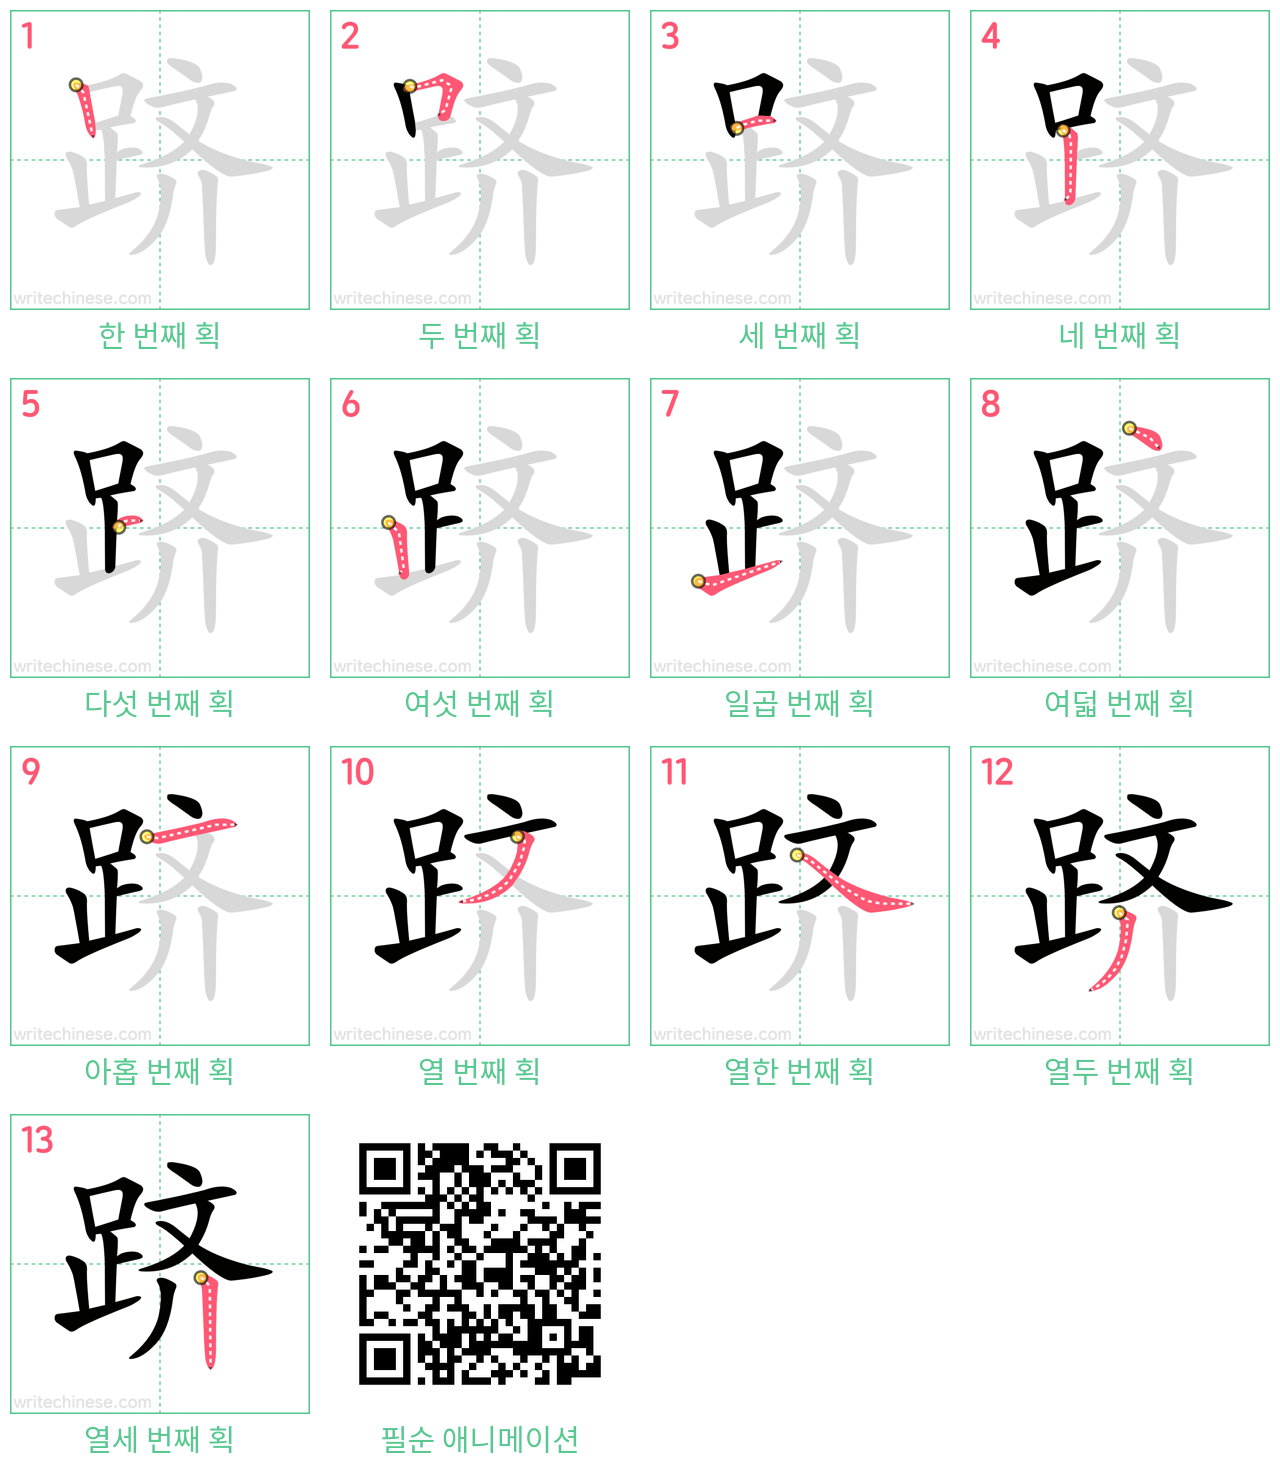 跻 step-by-step stroke order diagrams